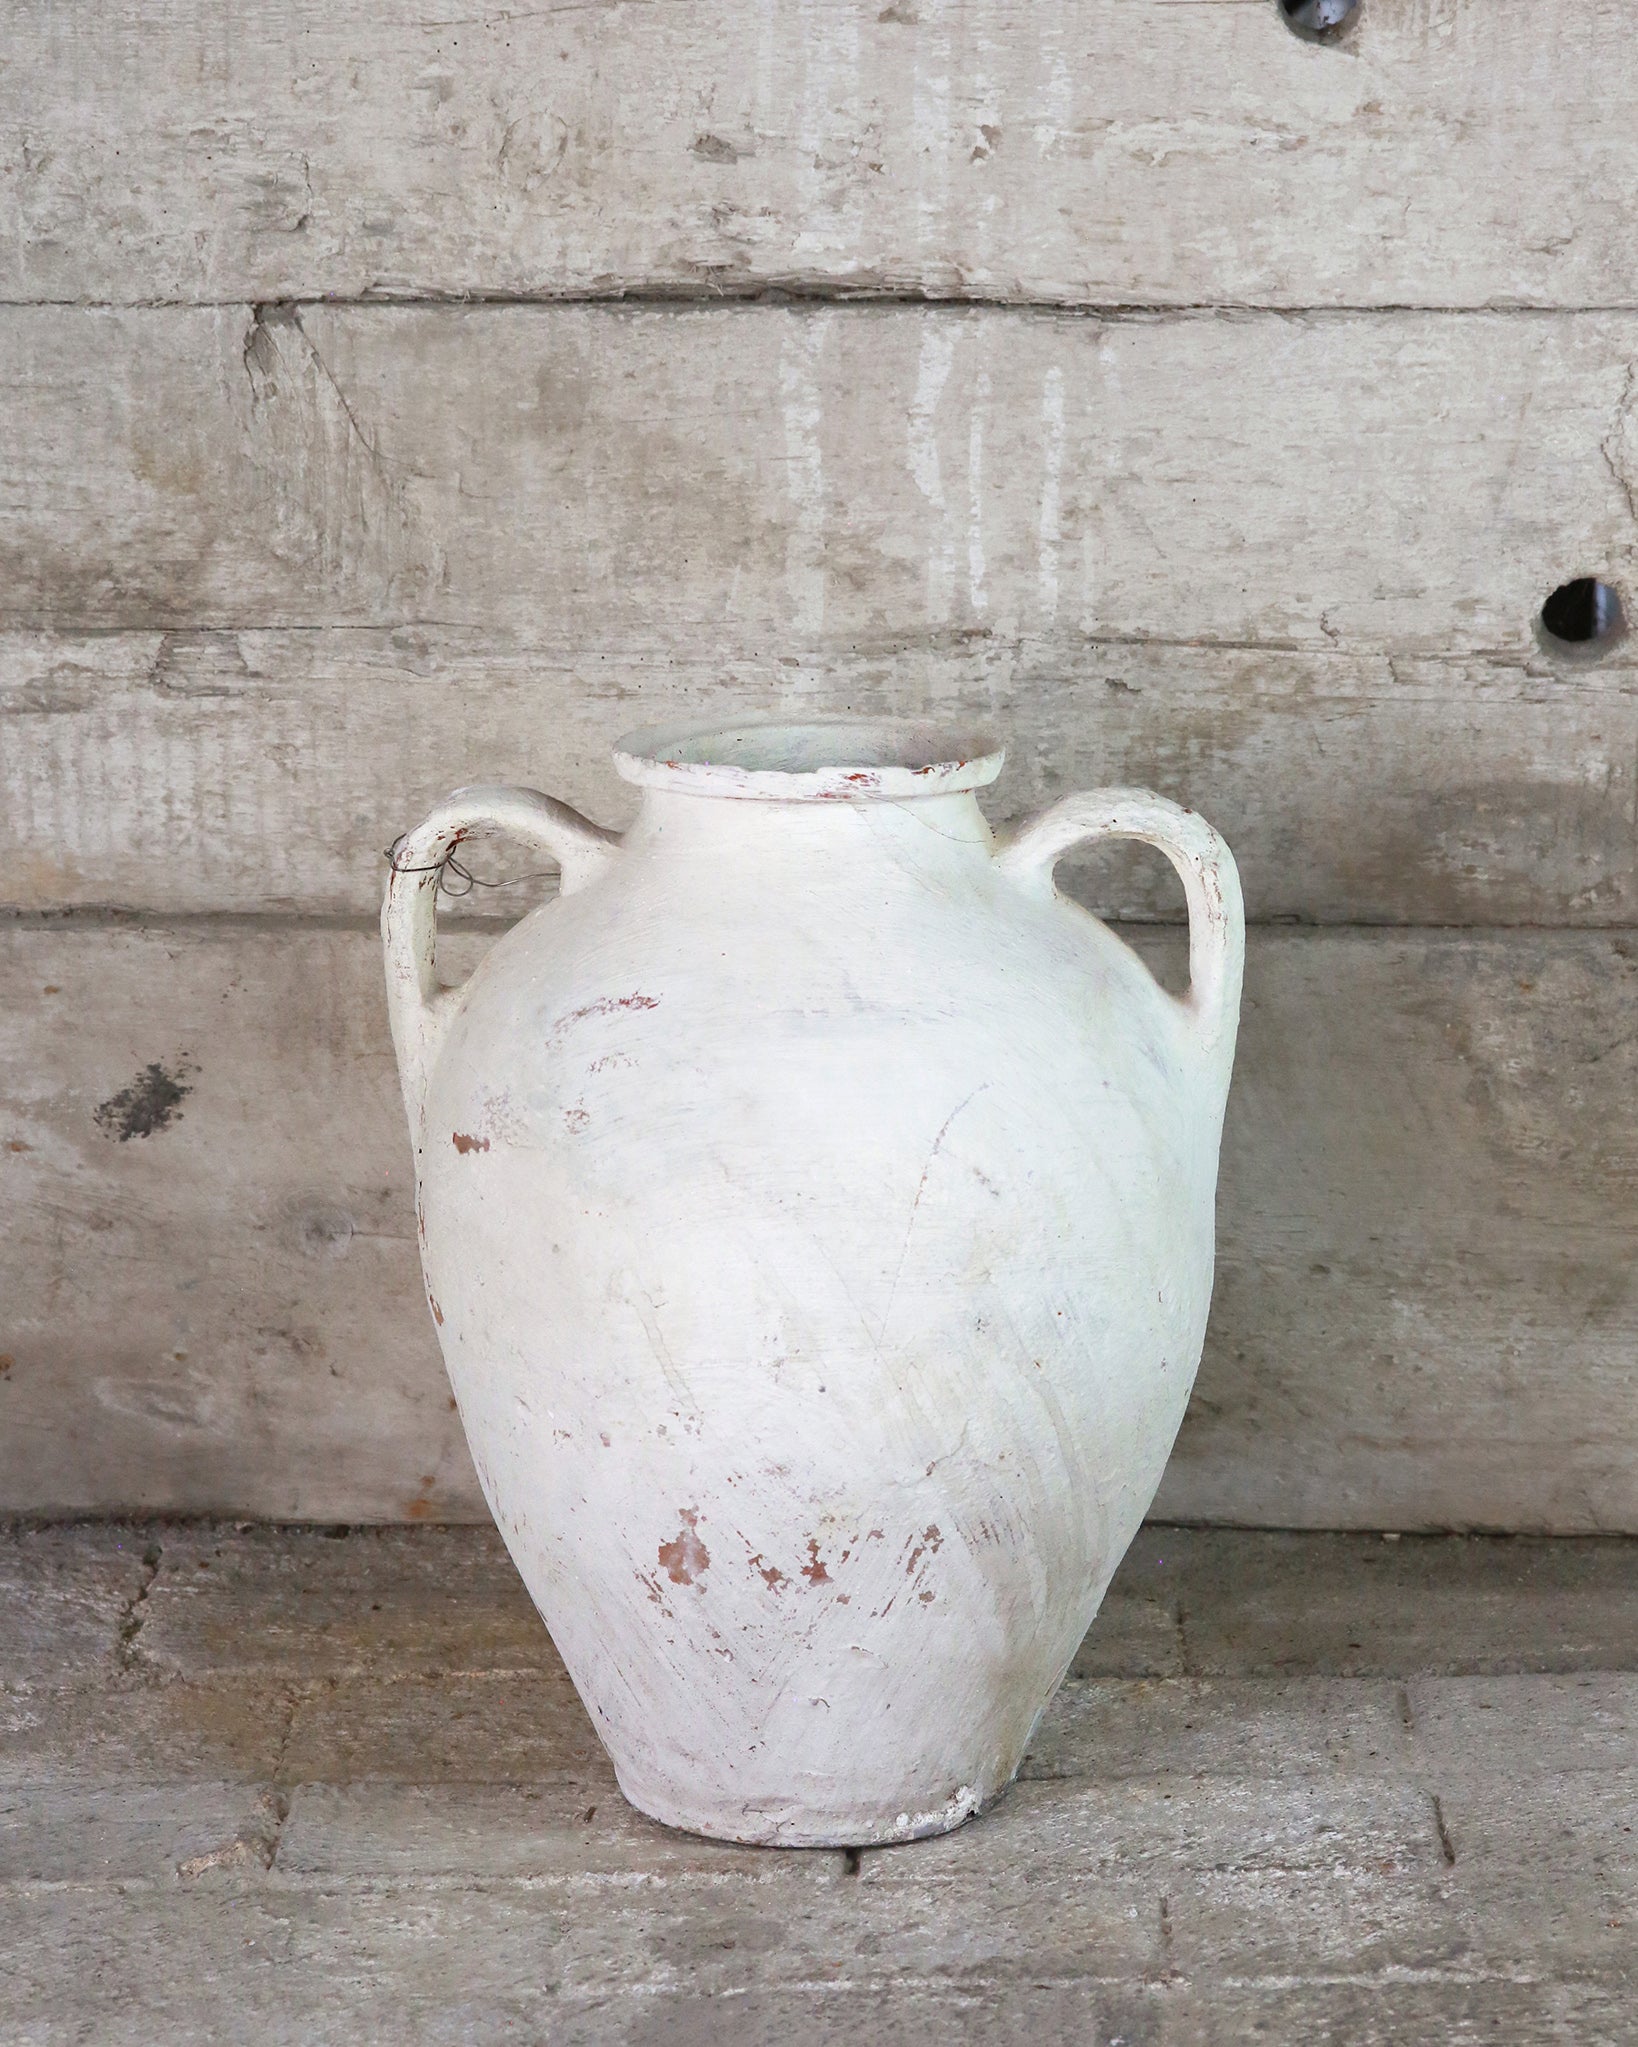 White painted Mediterranean Turkish urn with handles